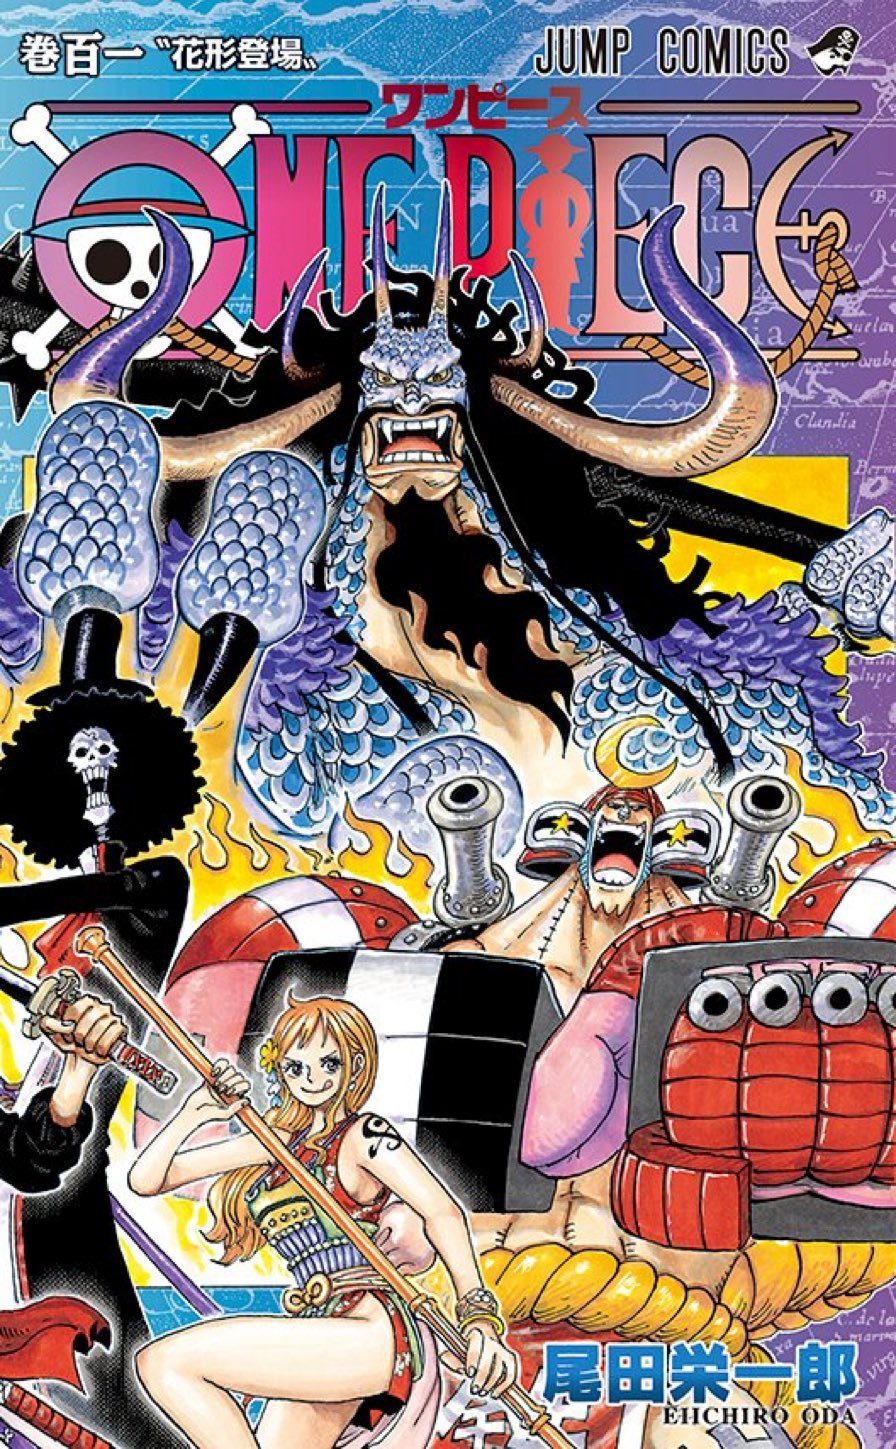 One Piece: Volume 100 do mangá tem capa divulgada